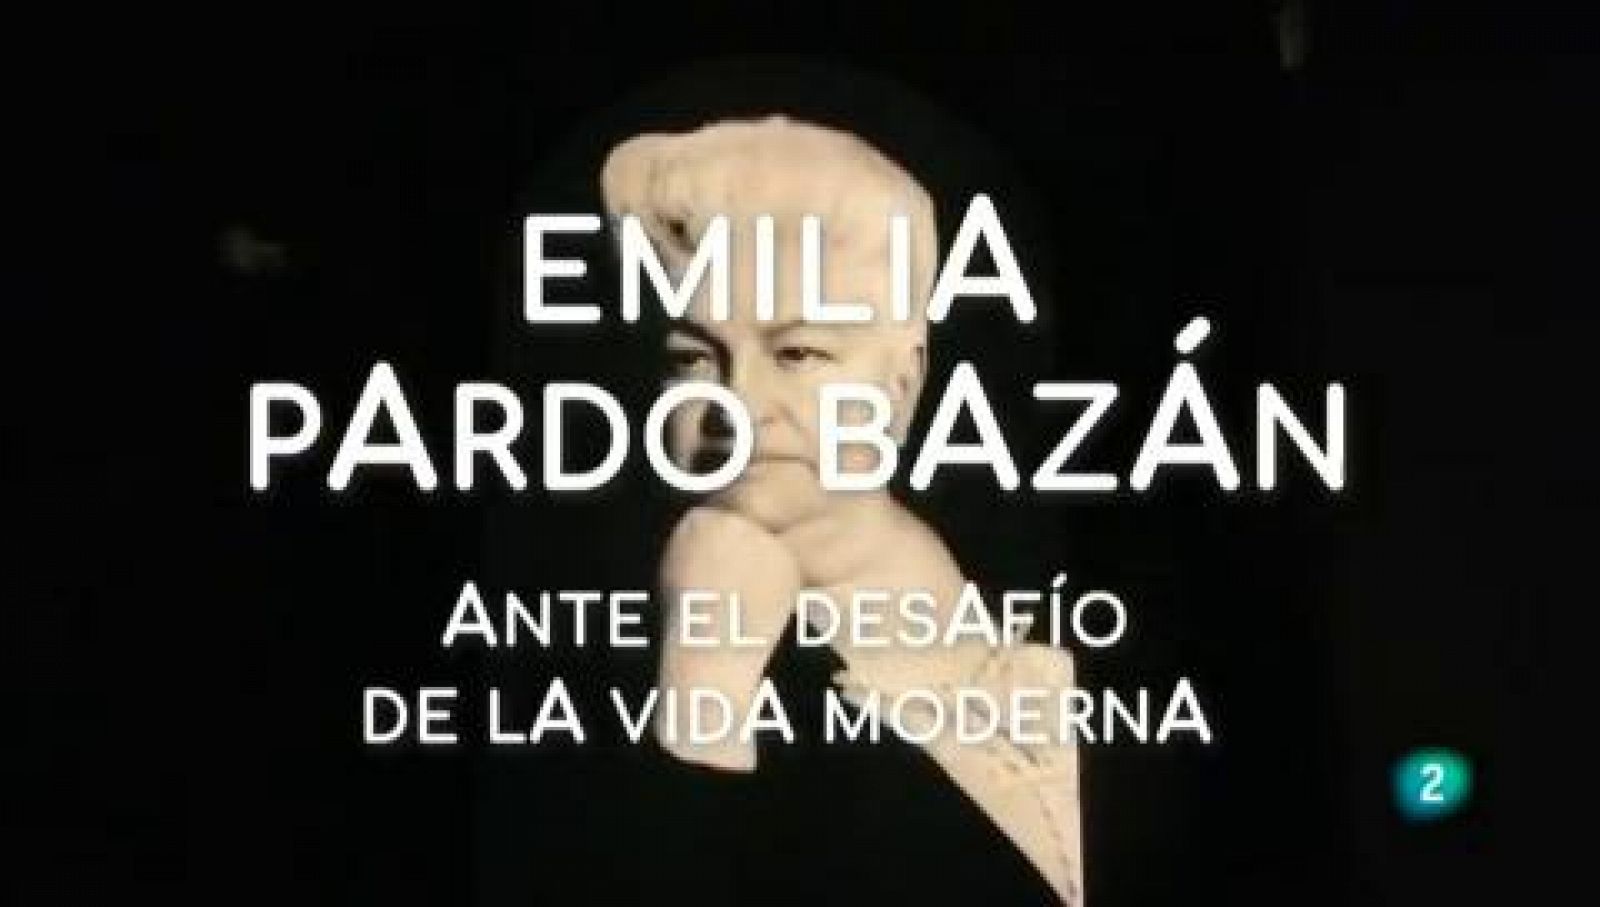 La aventura del saber - Emilia Pardo Bazán. El reto de la modernidad